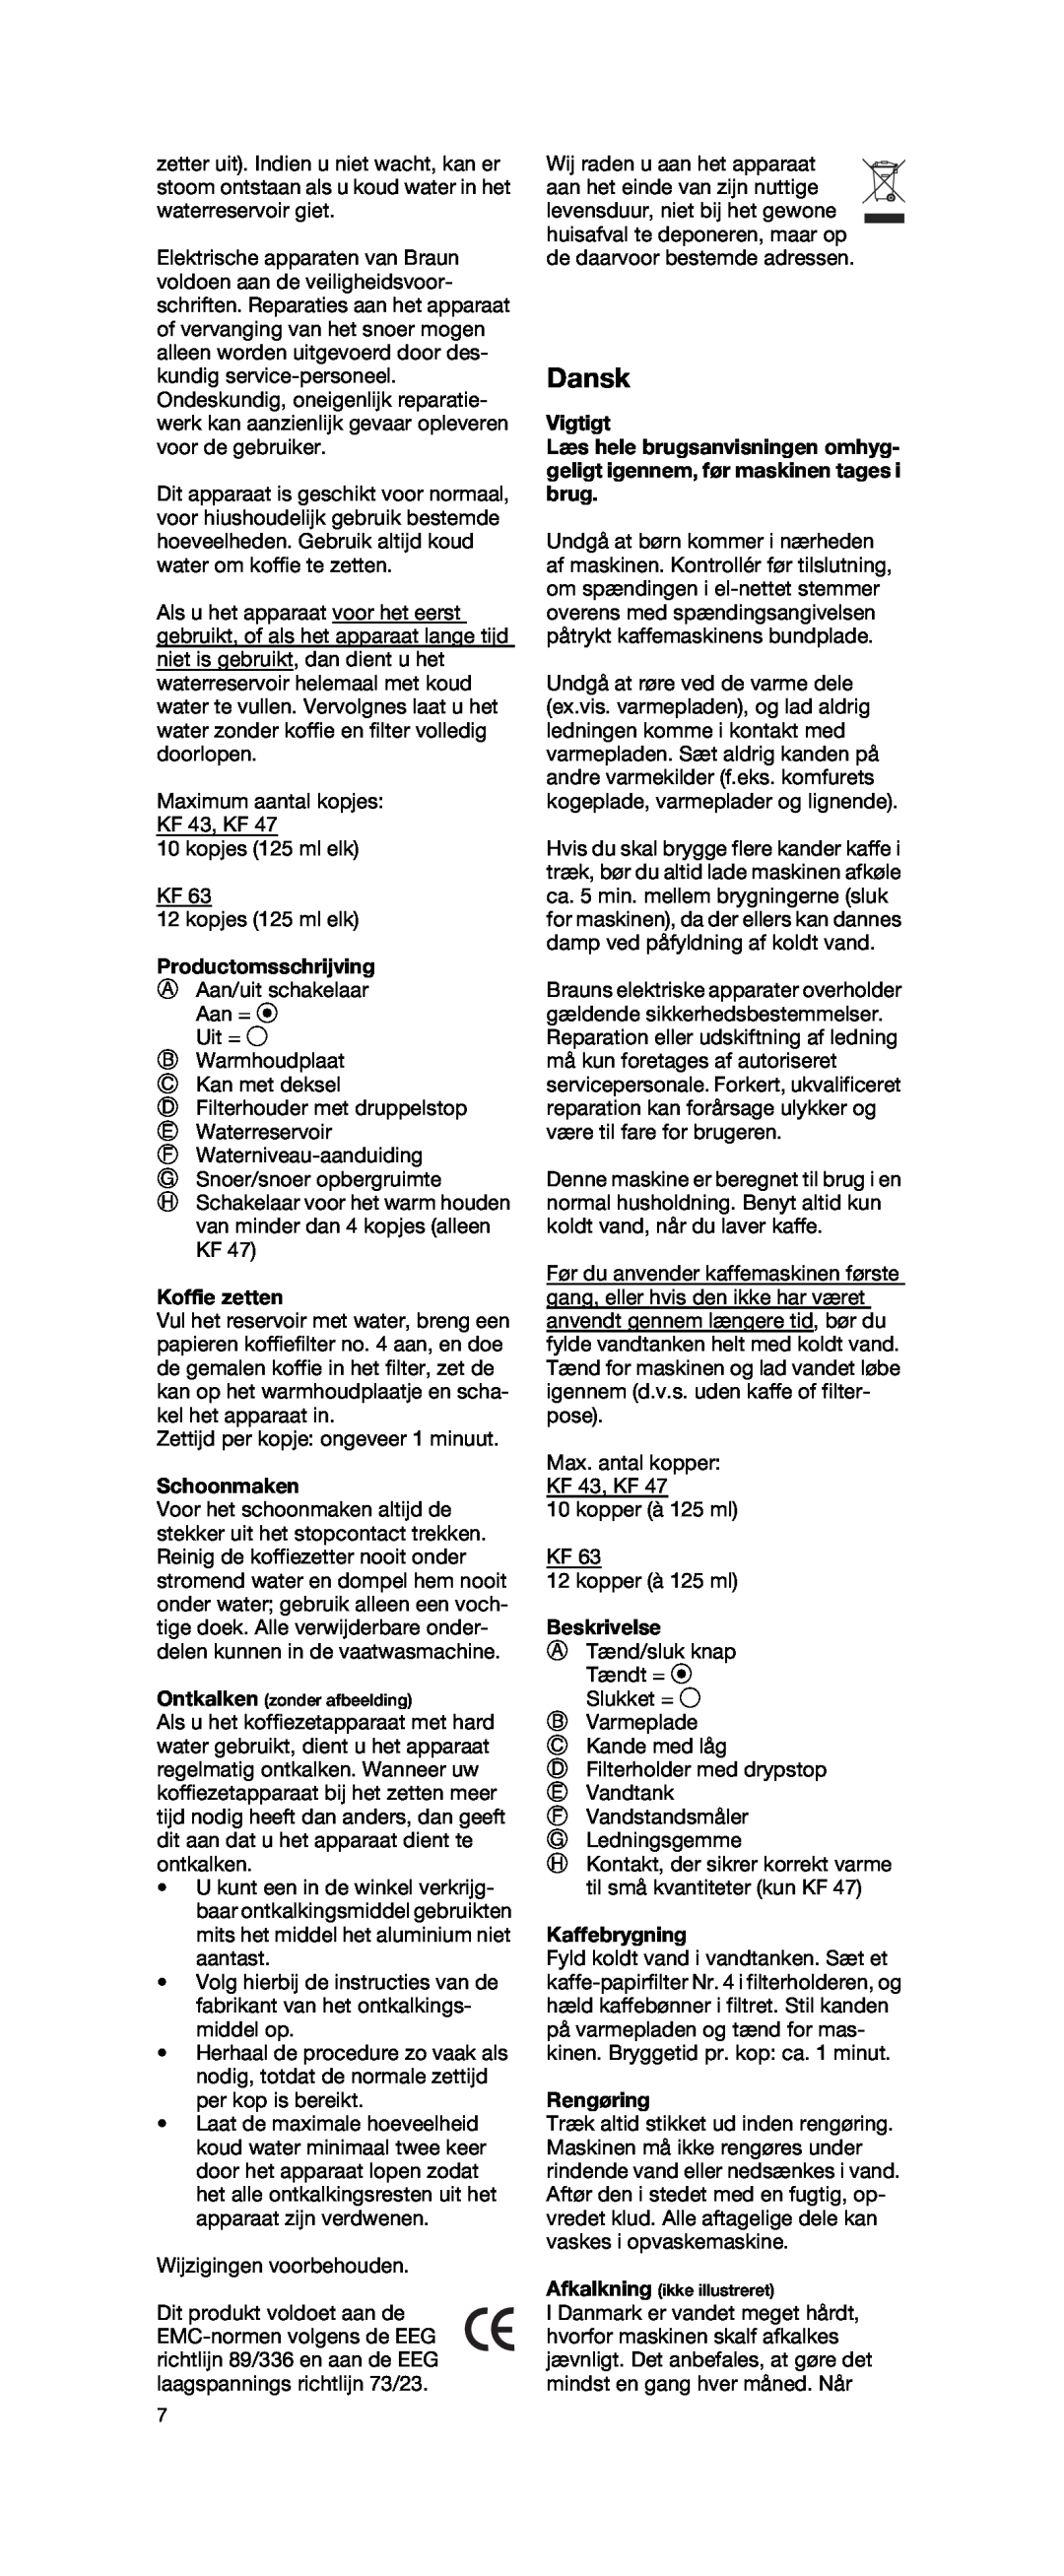 Braun KF 47 TYPE 4069 manual Dansk, Productomsschrijving, Koffie zetten, Schoonmaken, Vigtigt, Beskrivelse, Kaffebrygning 